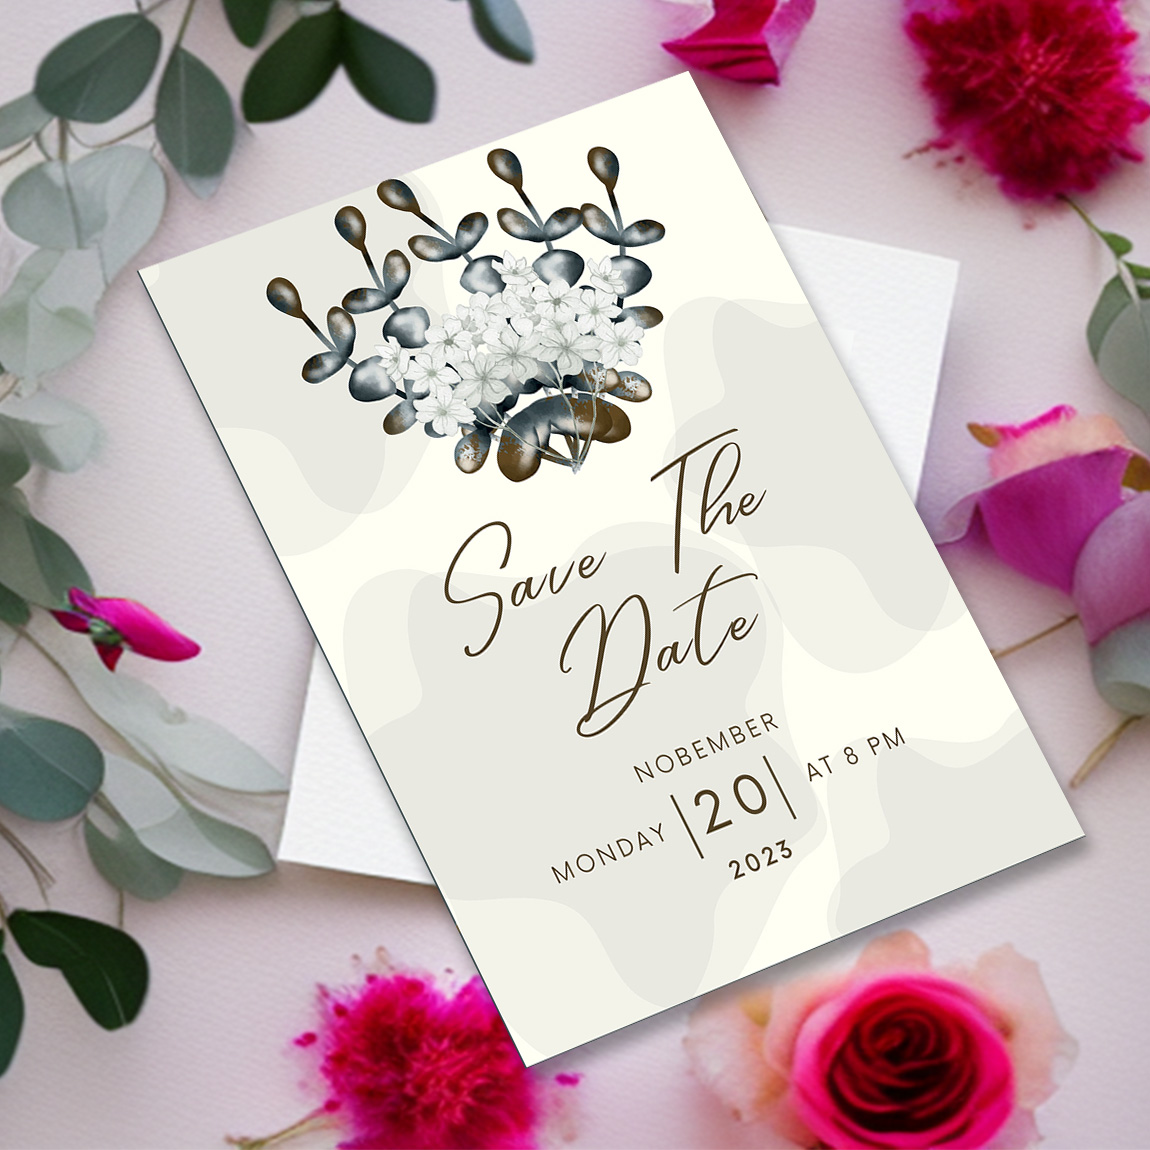 Thiết kế mẫu thiệp cưới đẹp nước sơn bên dưới đây là một lựa chọn tuyệt vời cho đám cưới của bạn. Với sự tinh tế và trang nhã, thiệp này sẽ giúp bạn gửi đi lời chúc mừng đáng nhớ đến các khách mời của mình.